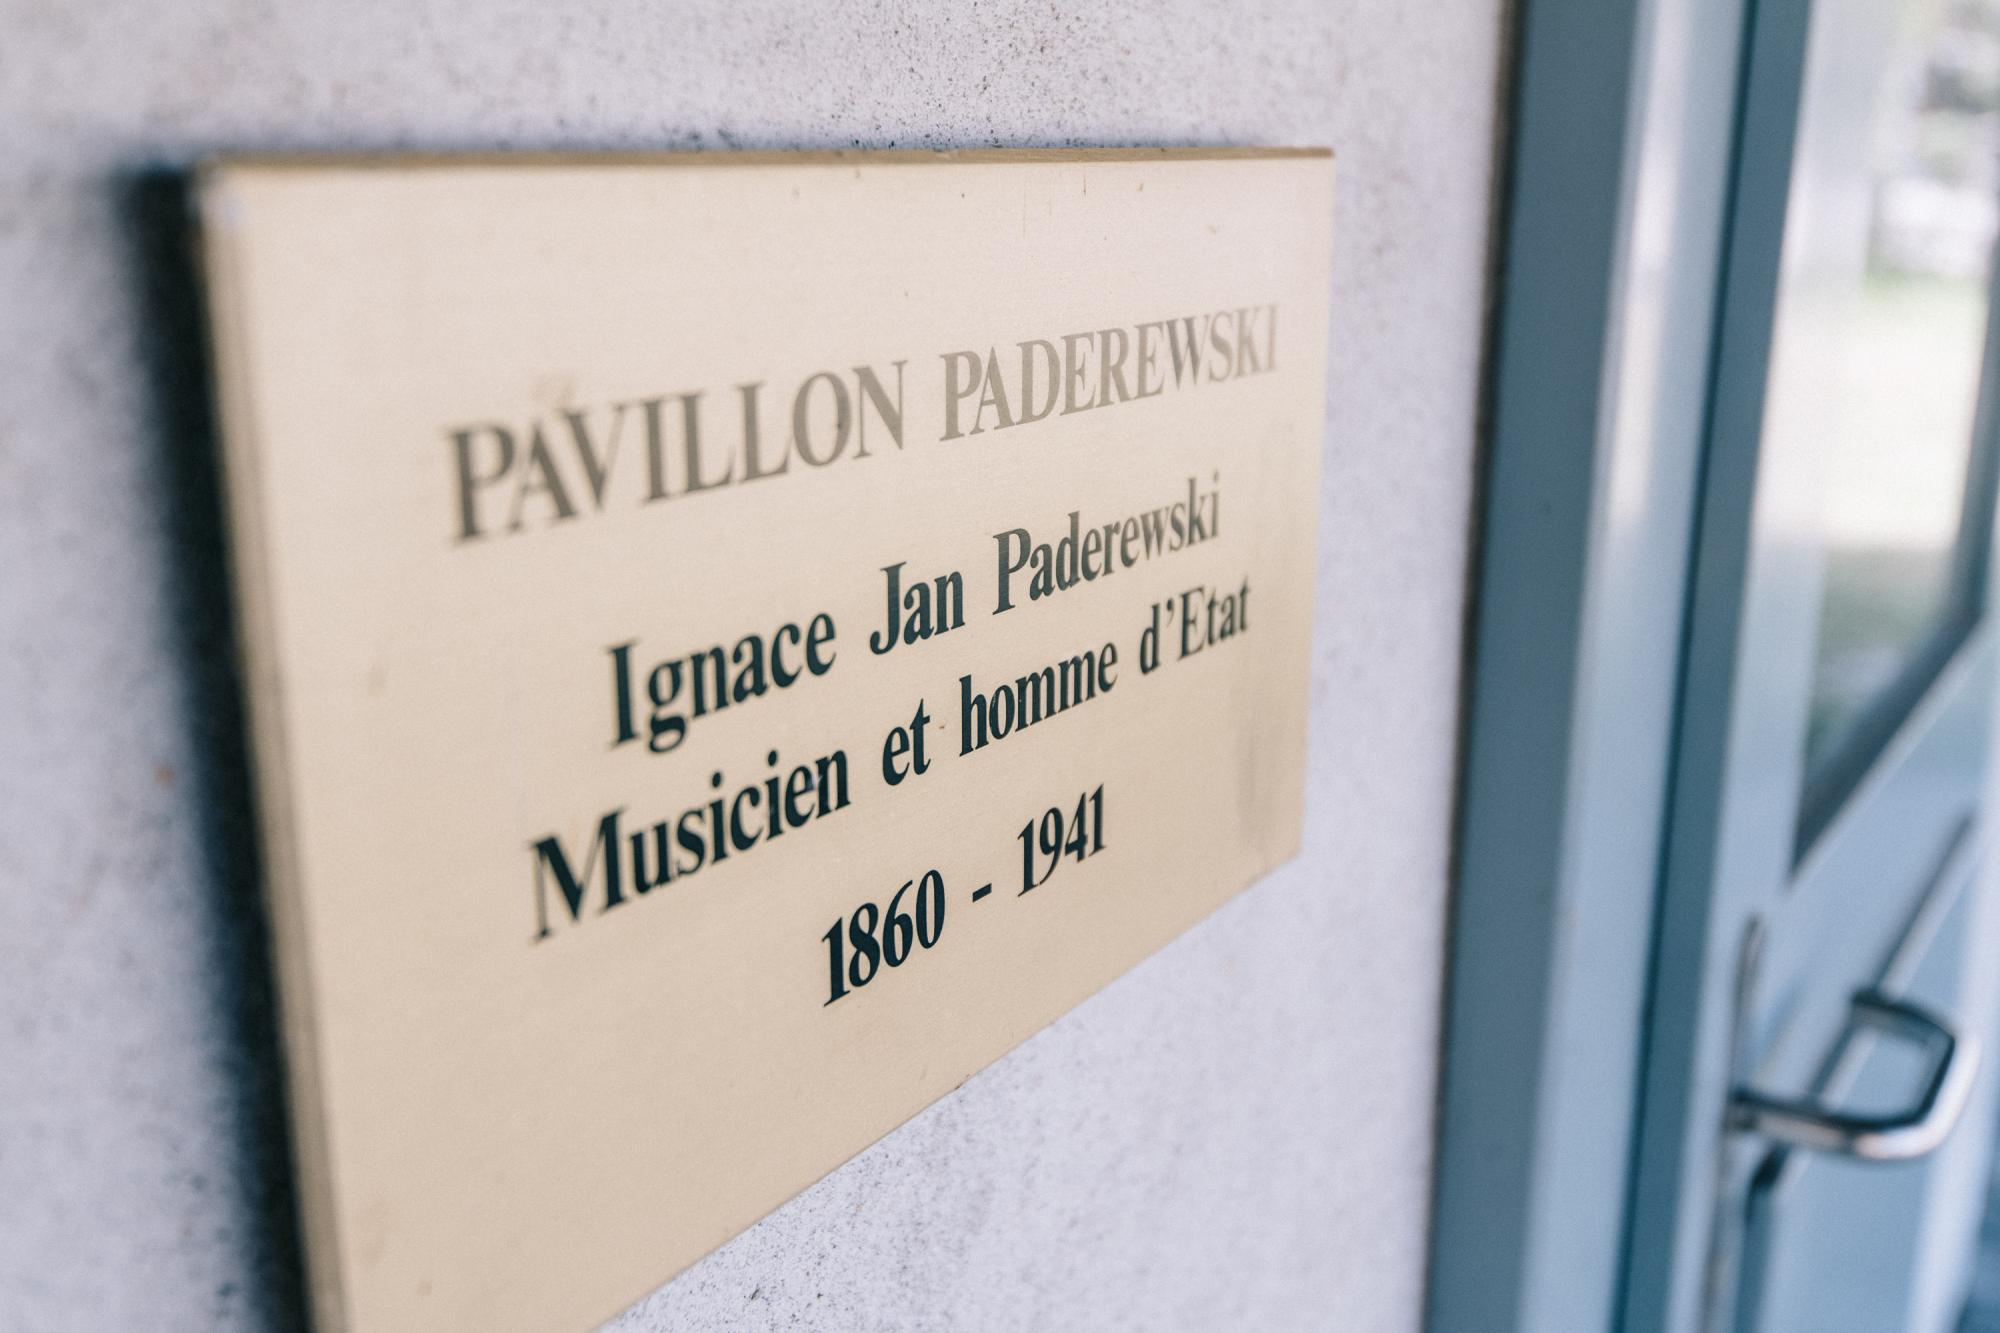 Pavillon Paderewski